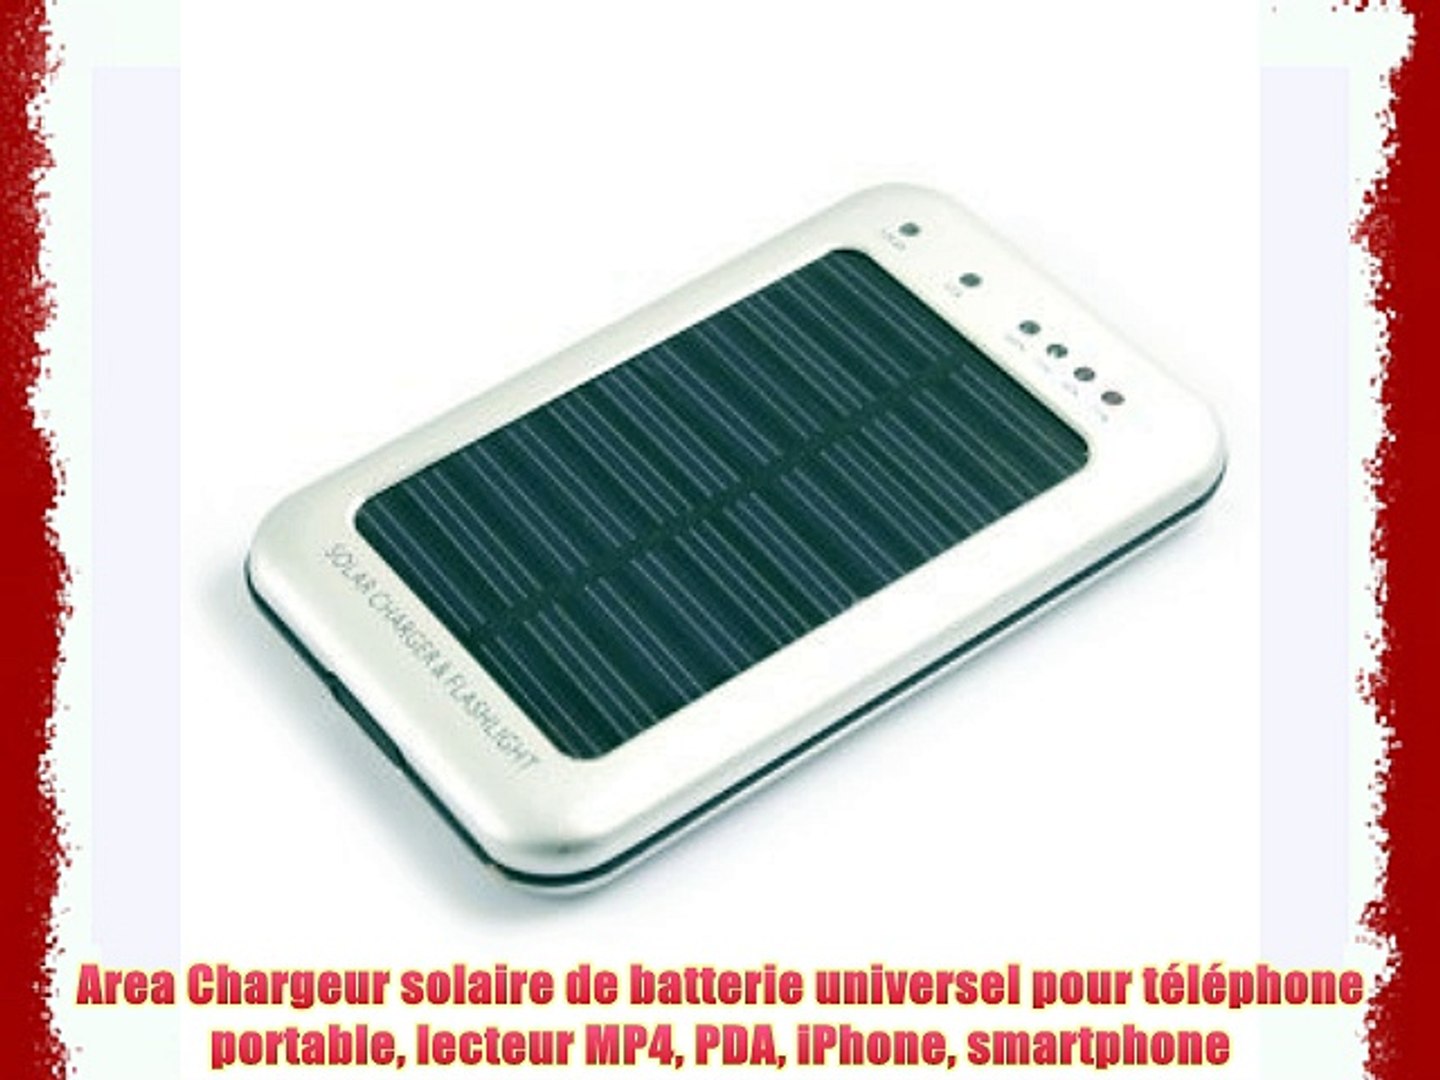 Area Chargeur Solaire De Batterie Universel Pour Telephone